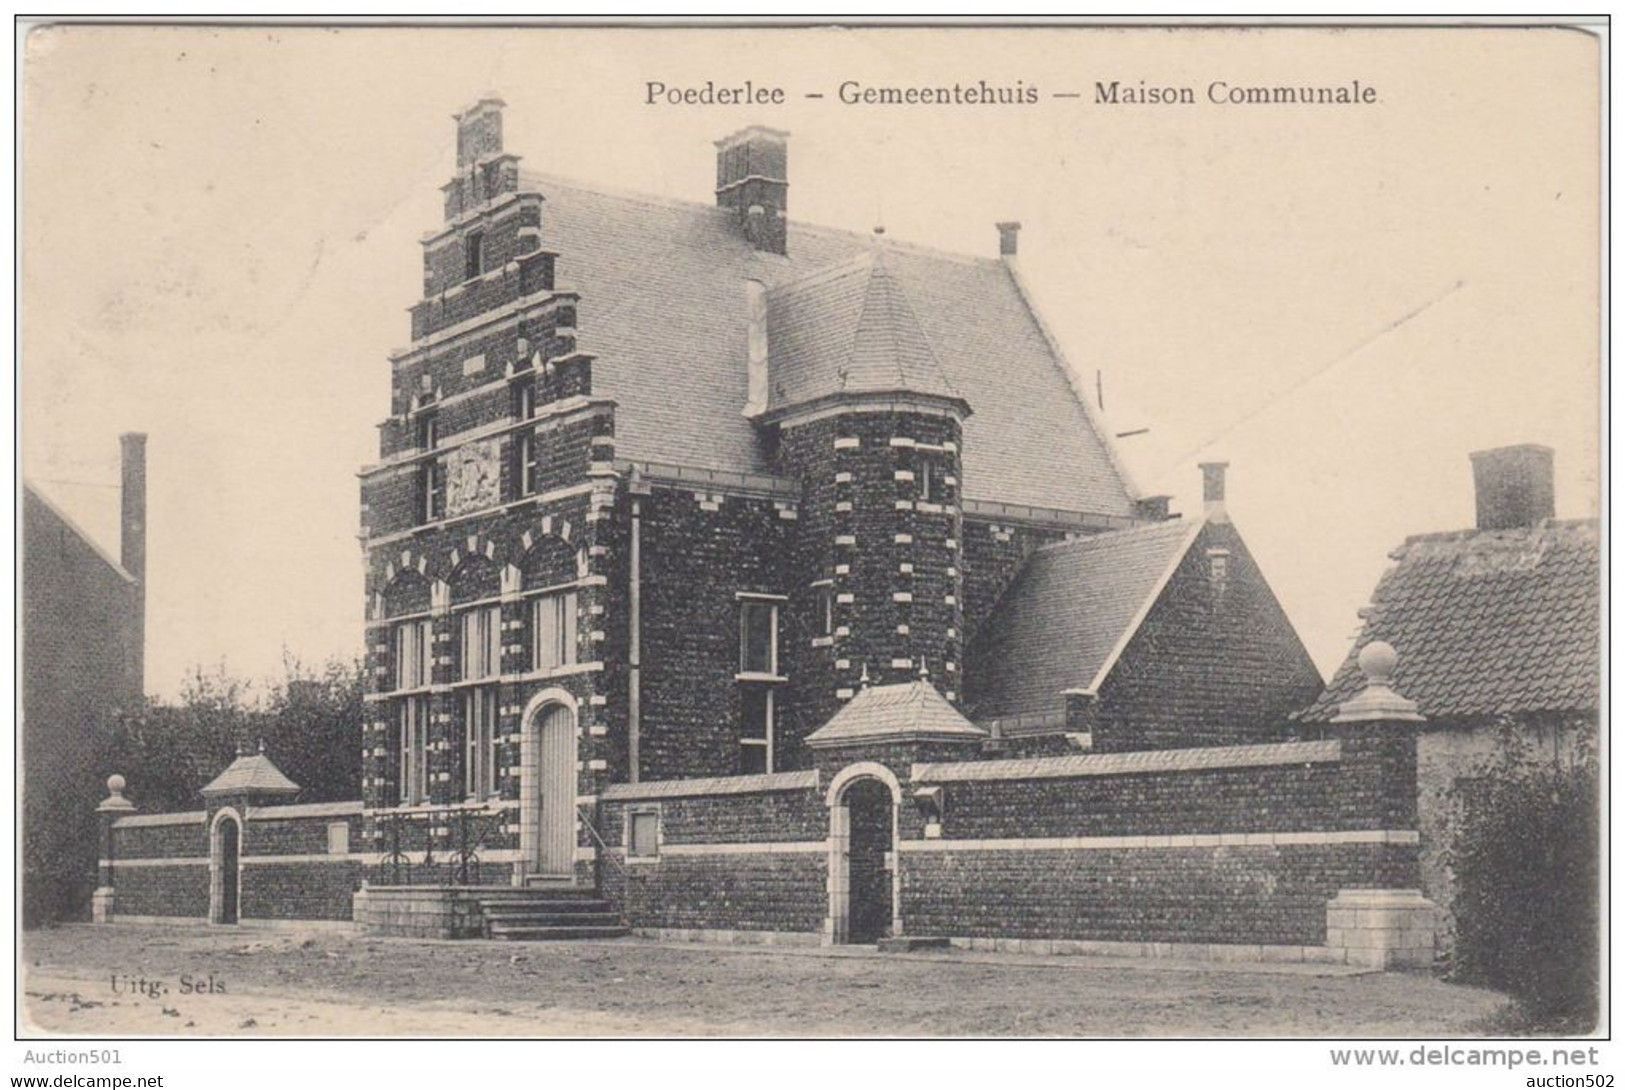 23312g GEMEENTEHUIS - MAISON COMMUNALE - Poederlee - 1913 - Relais - Lille